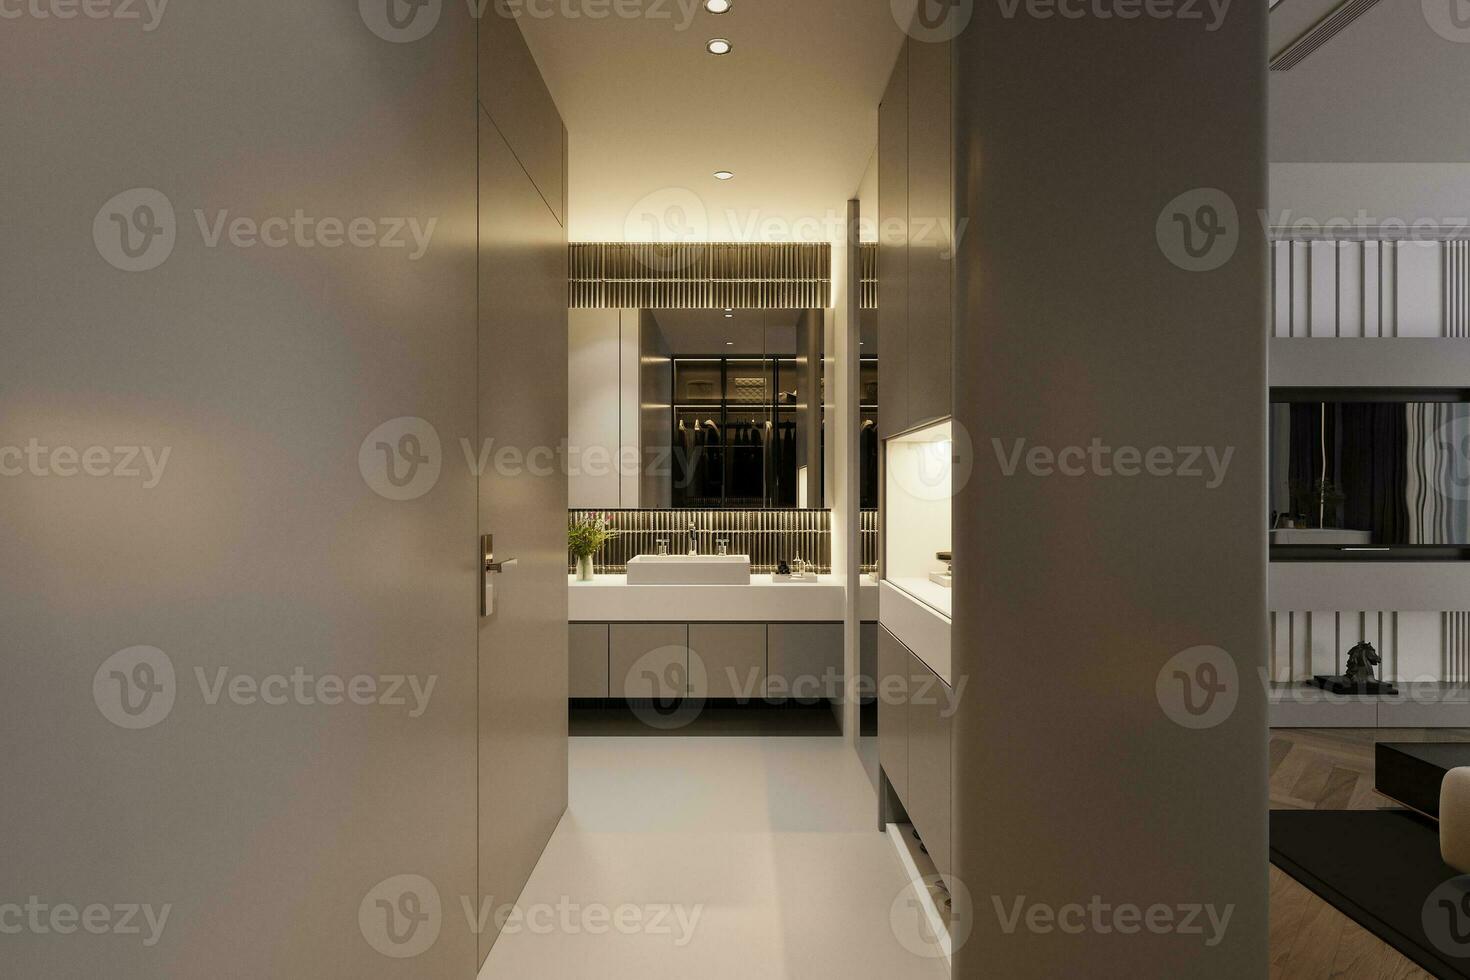 Innere von modern Toilette, Waschbecken, Spiegel, Kabinett in das Innere, 3d Rendern foto